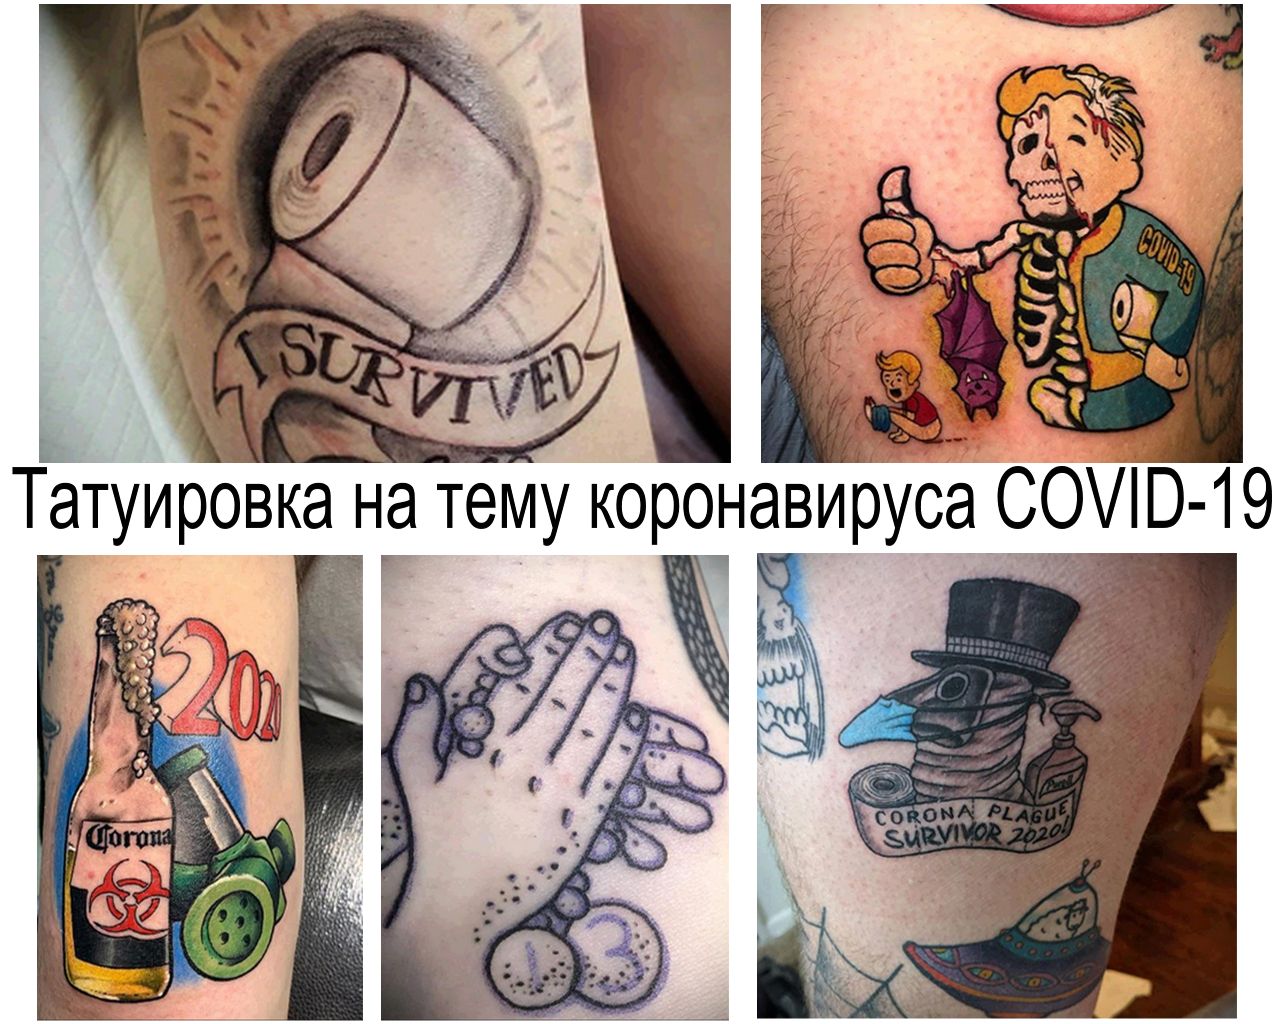 Пандемия коронавируса COVID-19 нашла свое отображение в татуировке